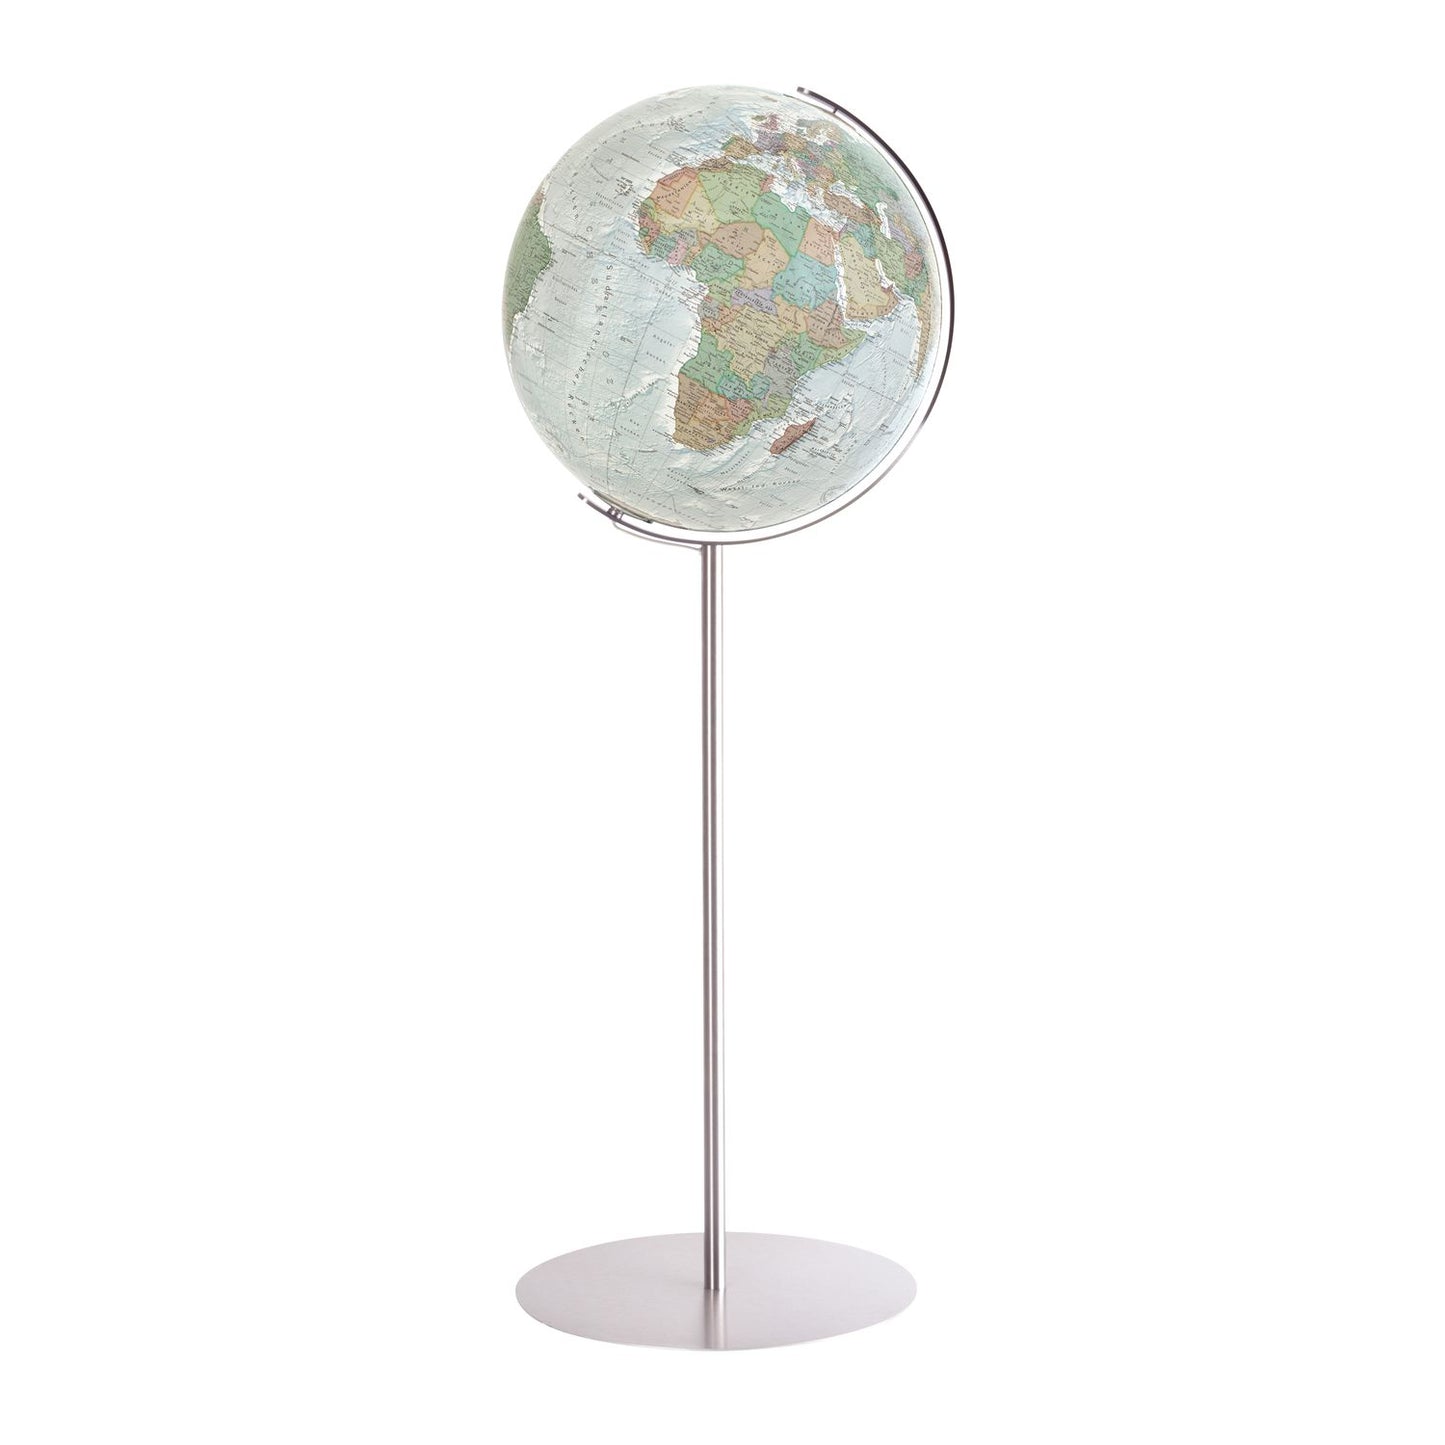 Globe sur pied Columbus D 51 cm verre acrylique, image de carte anglaise, différentes variantes